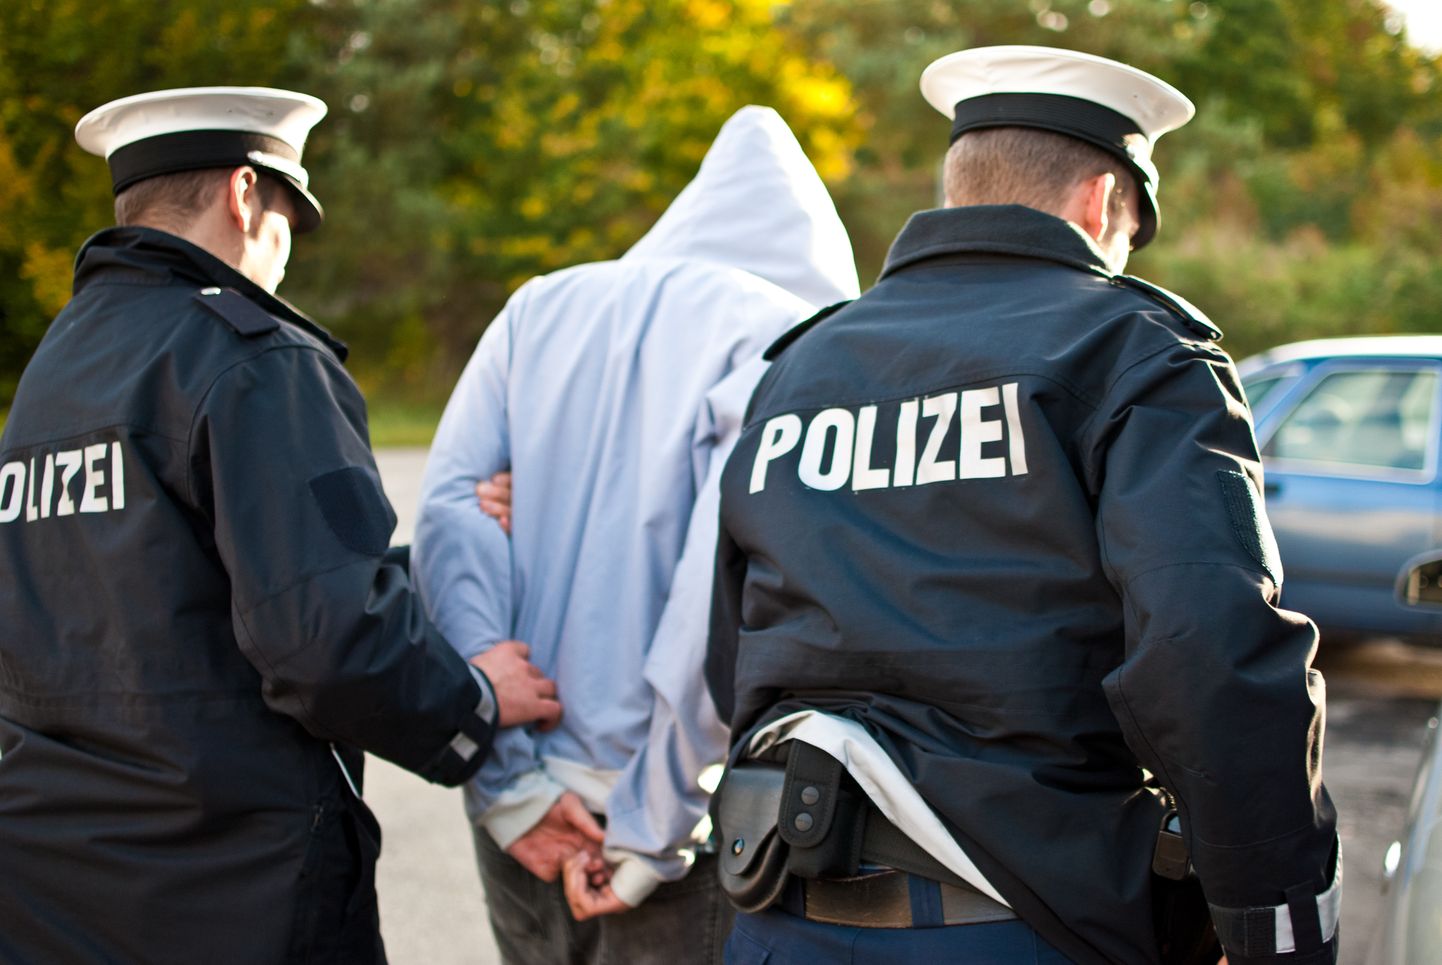 Saksa politsei võtmas kinni kuritegevuses kahtlustatavat. Pilt on illustreeriv